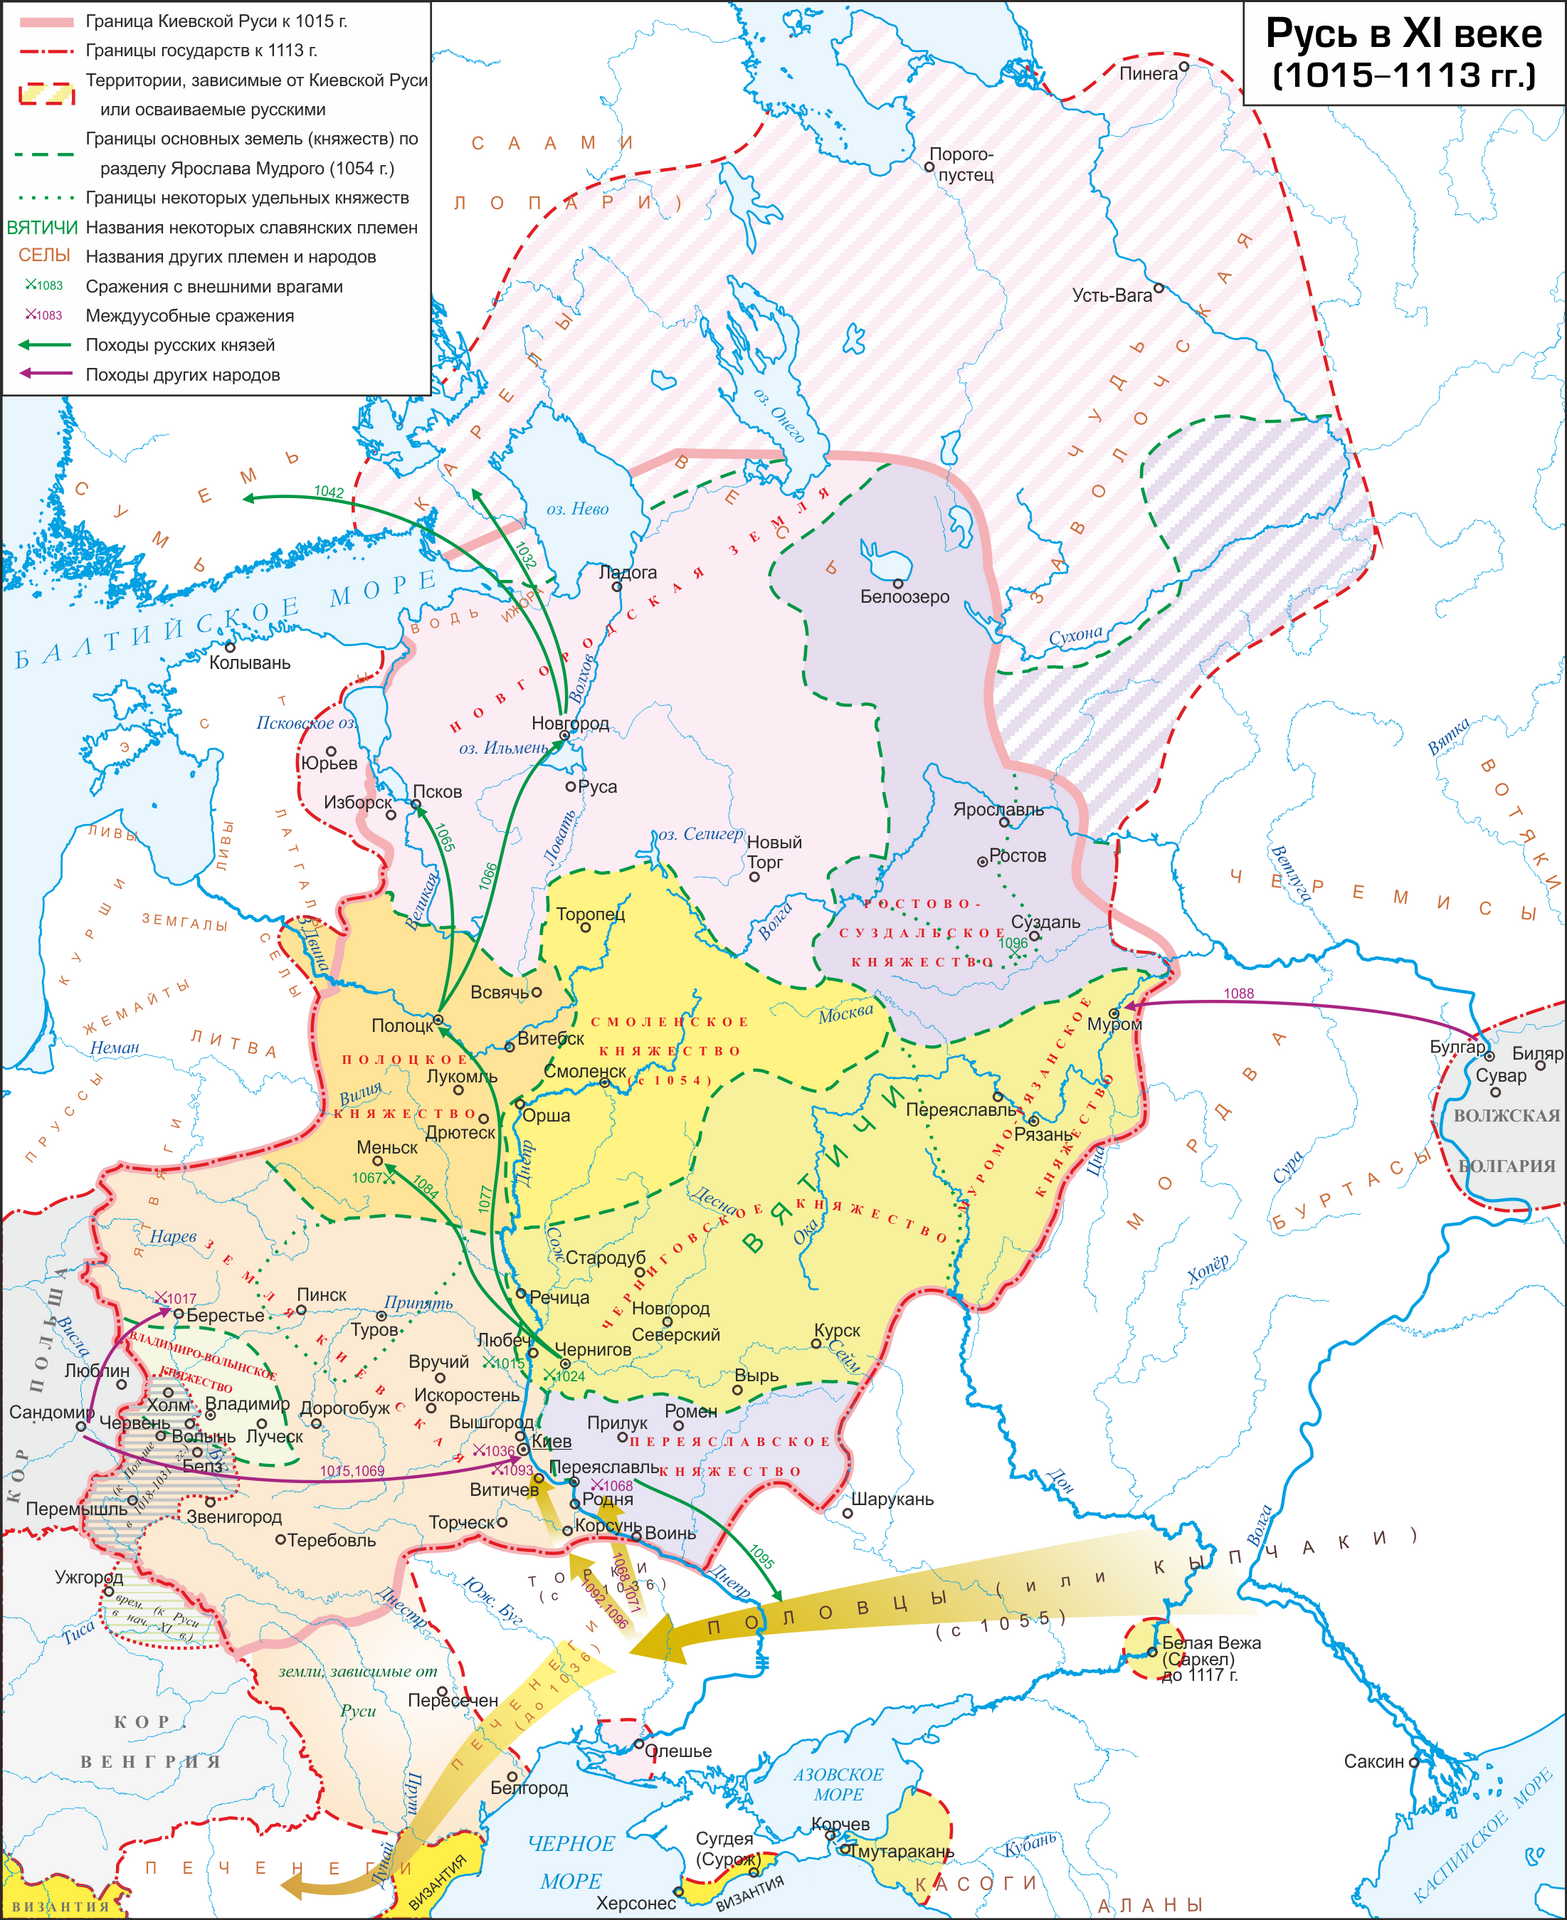 KIEVAN RUS, MAP, Rus-1015-1113.png